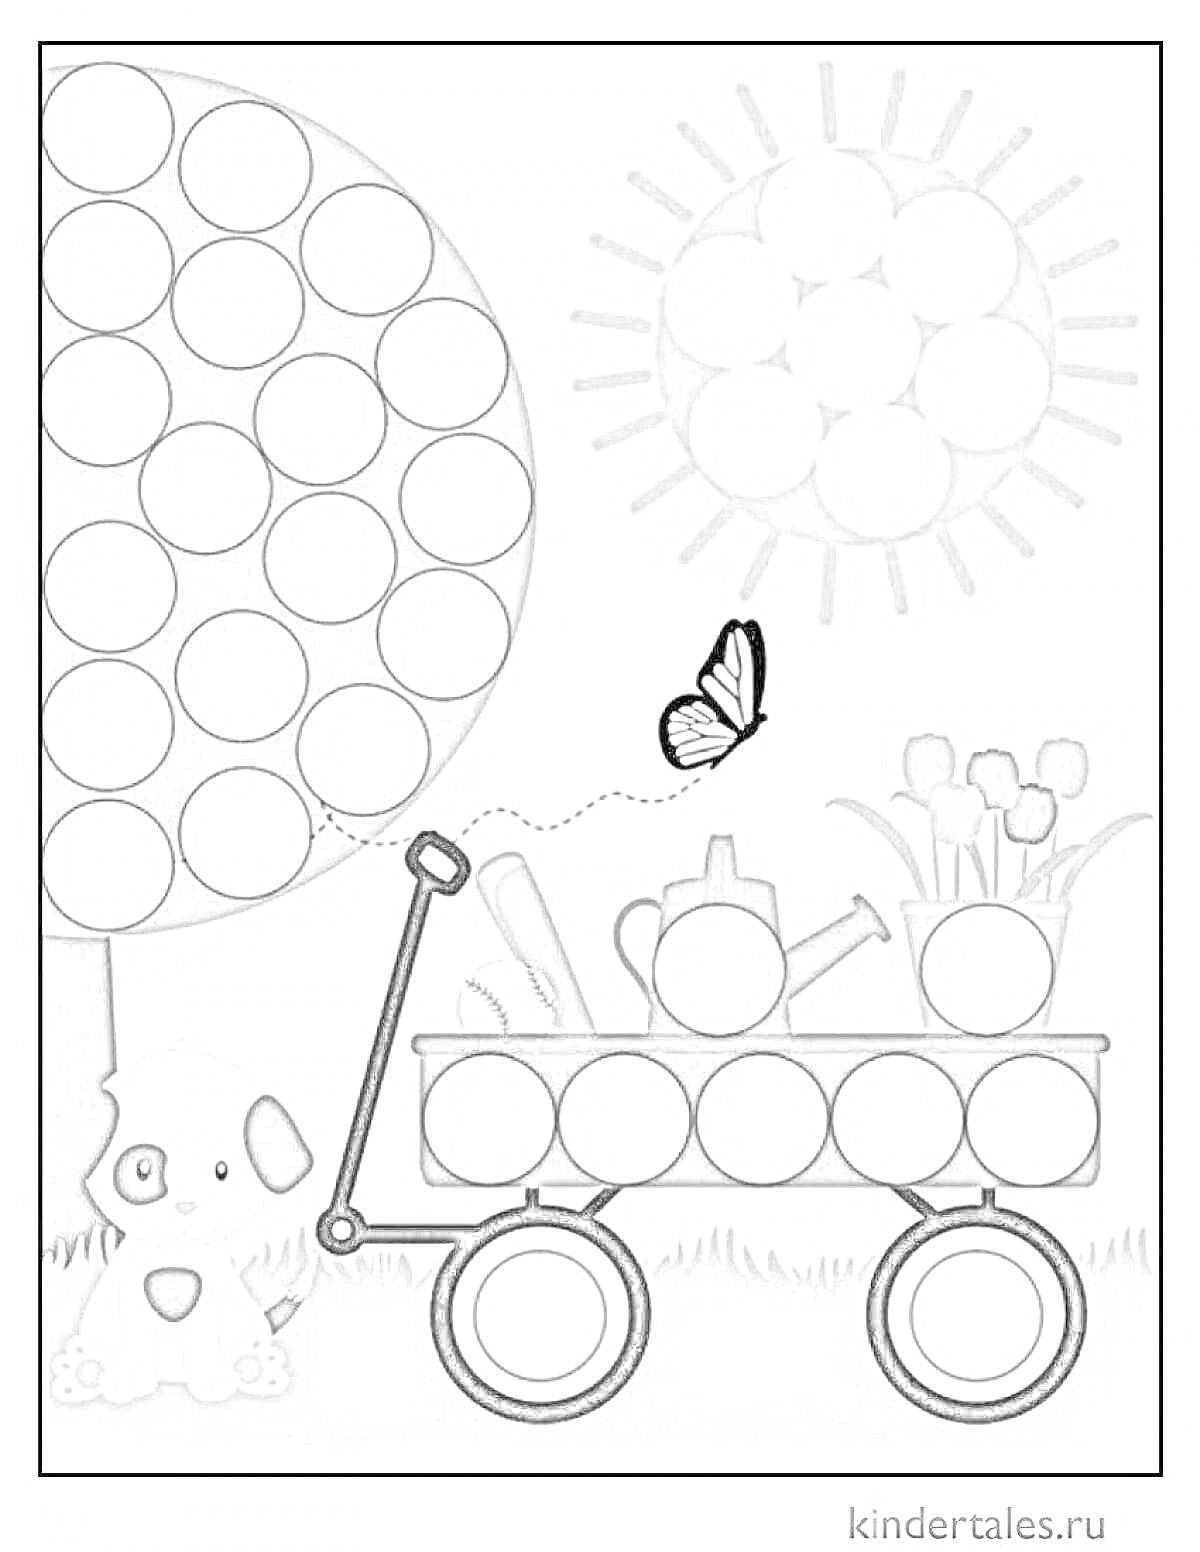 Раскраска Раскраска с кружочками - дерево, солнце, собака, тележка с лейкой, цветок и бабочка